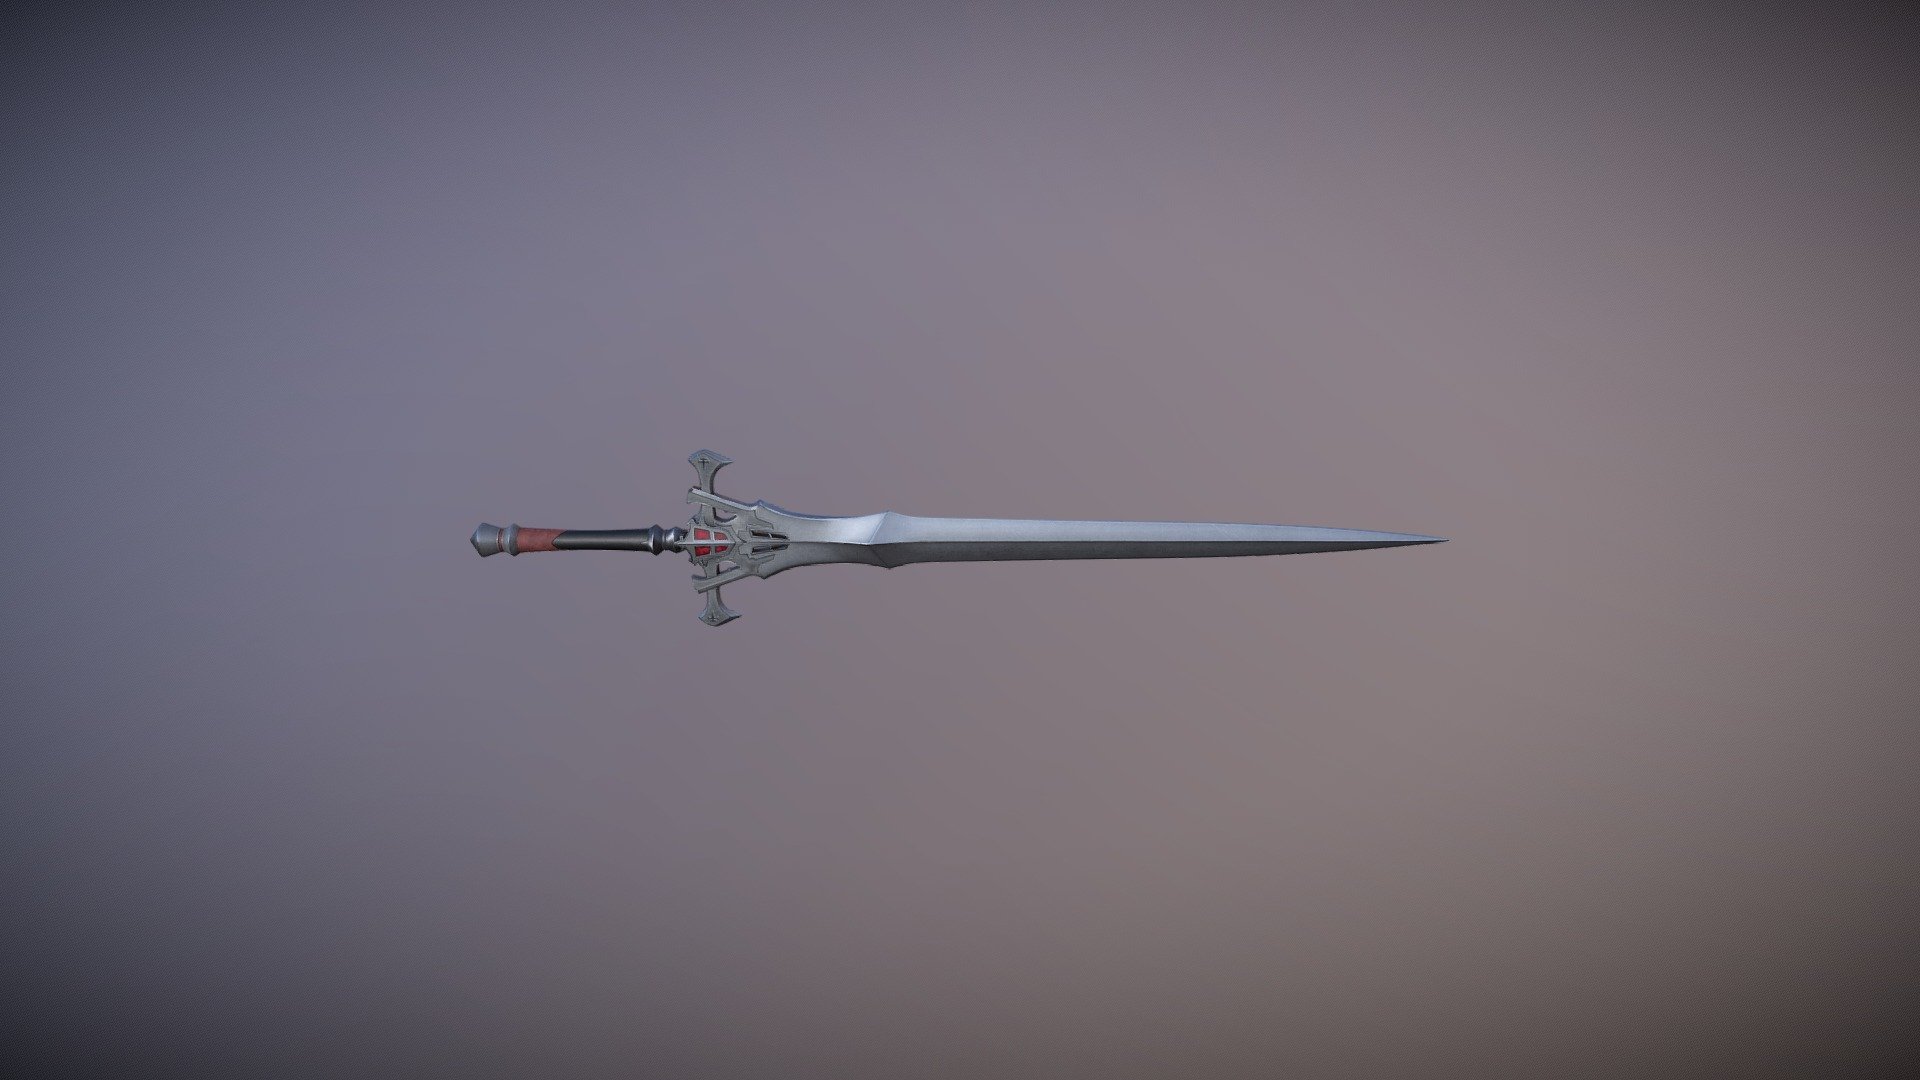 Fanart model of the Rosfield family sword from FFXVI. Blender+Substance Painter 3d model